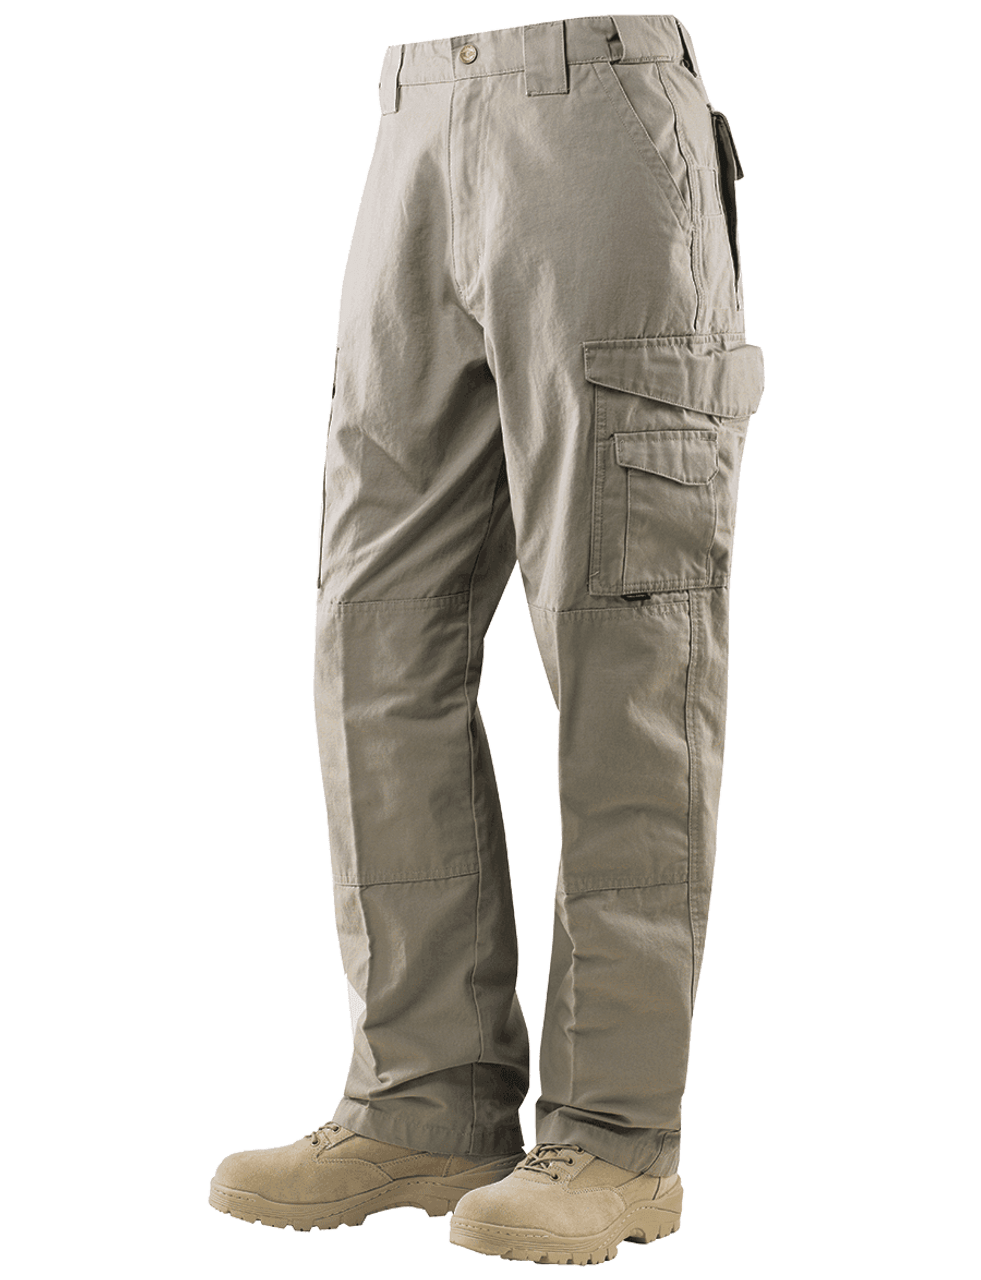 Tru-Spec 1060 24/7 Men's Original Khaki Tactical Pants - Atlantic ...